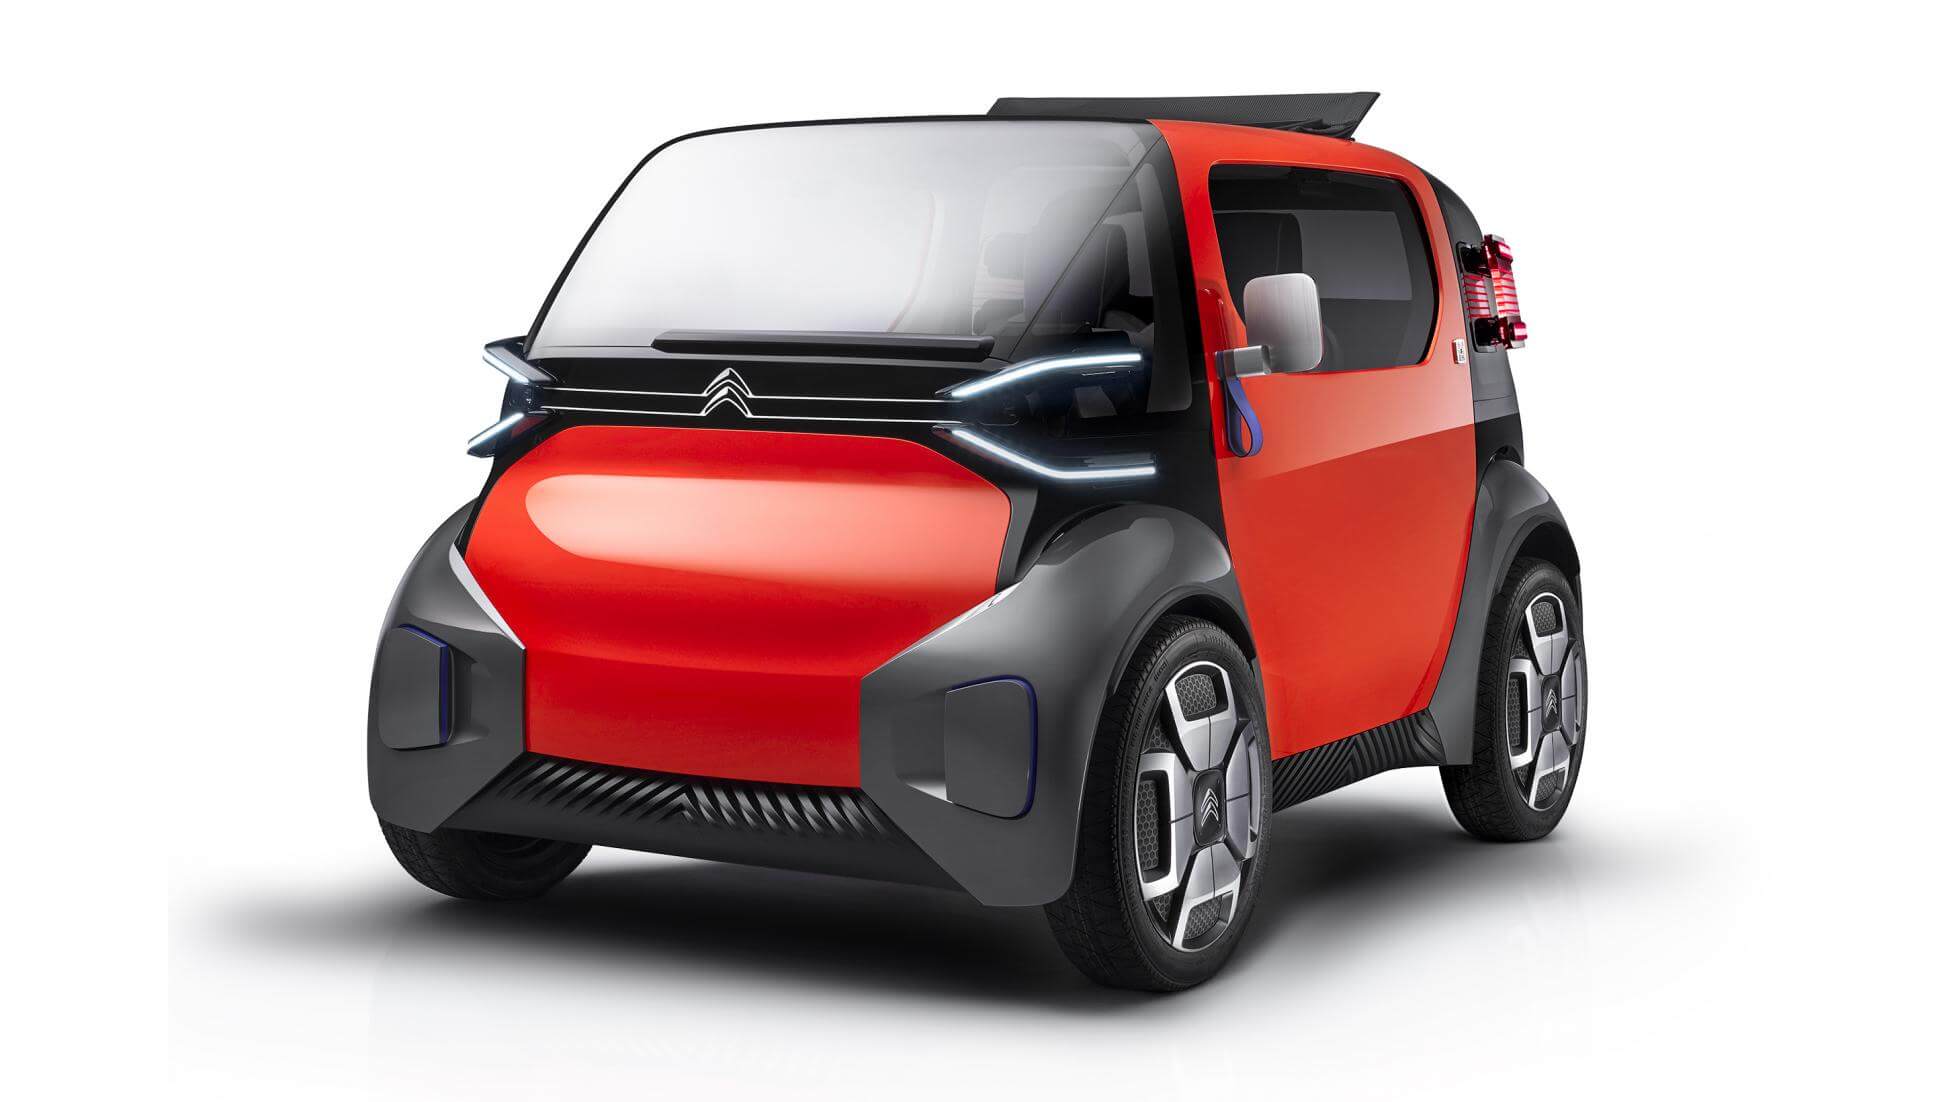 Η Citroën ετοιμάζει αυτοκίνητο που δεν θα χρειάζεται δίπλωμα οδήγησης [vid]